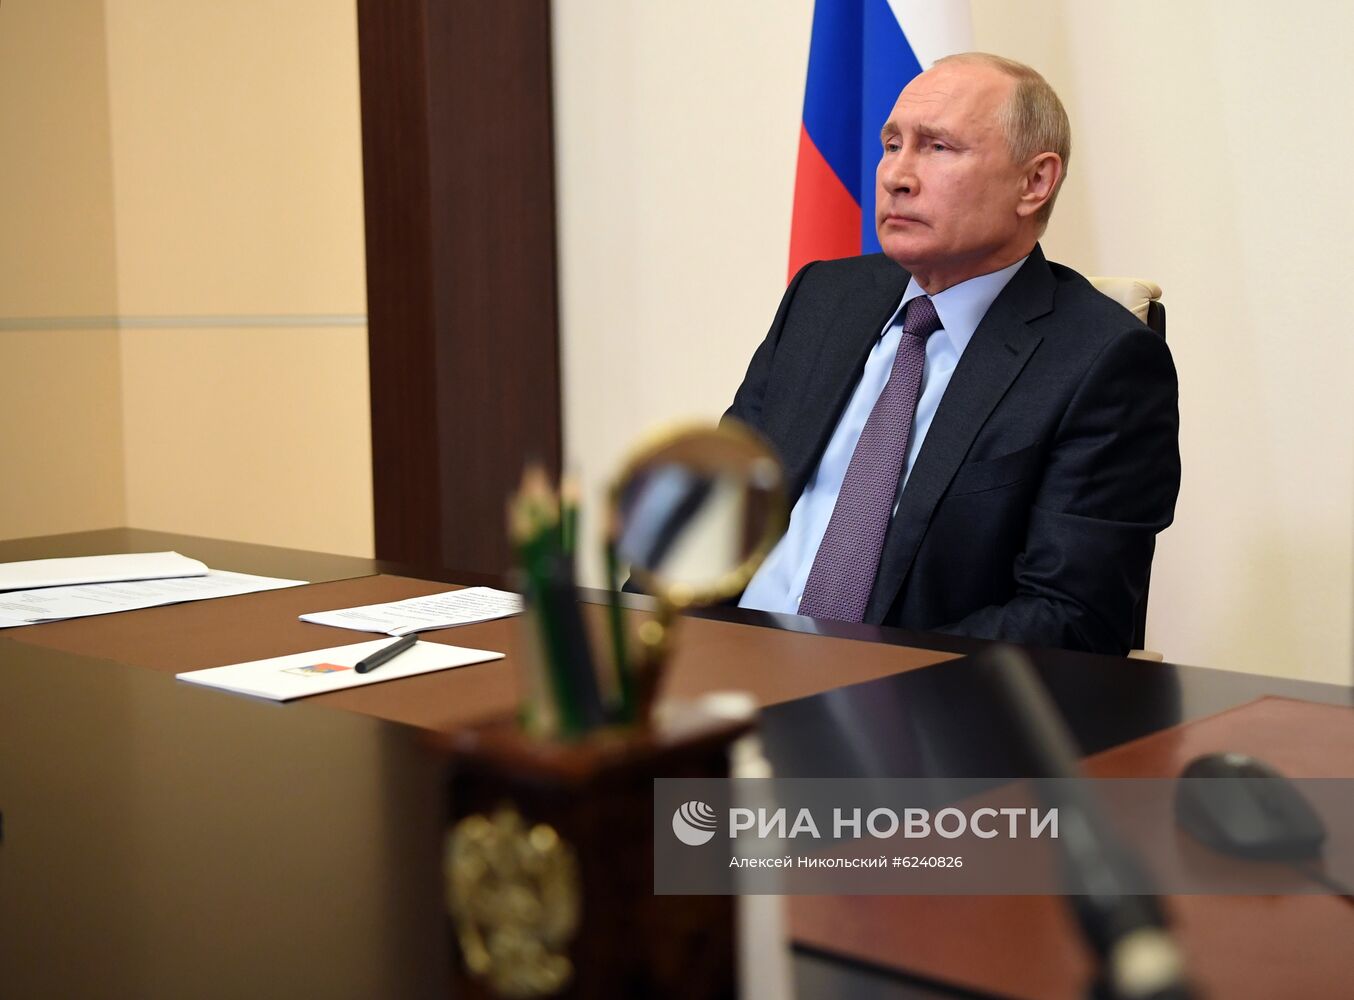 Президент РФ В. Путин провел совещание по вопросам поддержки авиационной промышленности и авиаперевозок